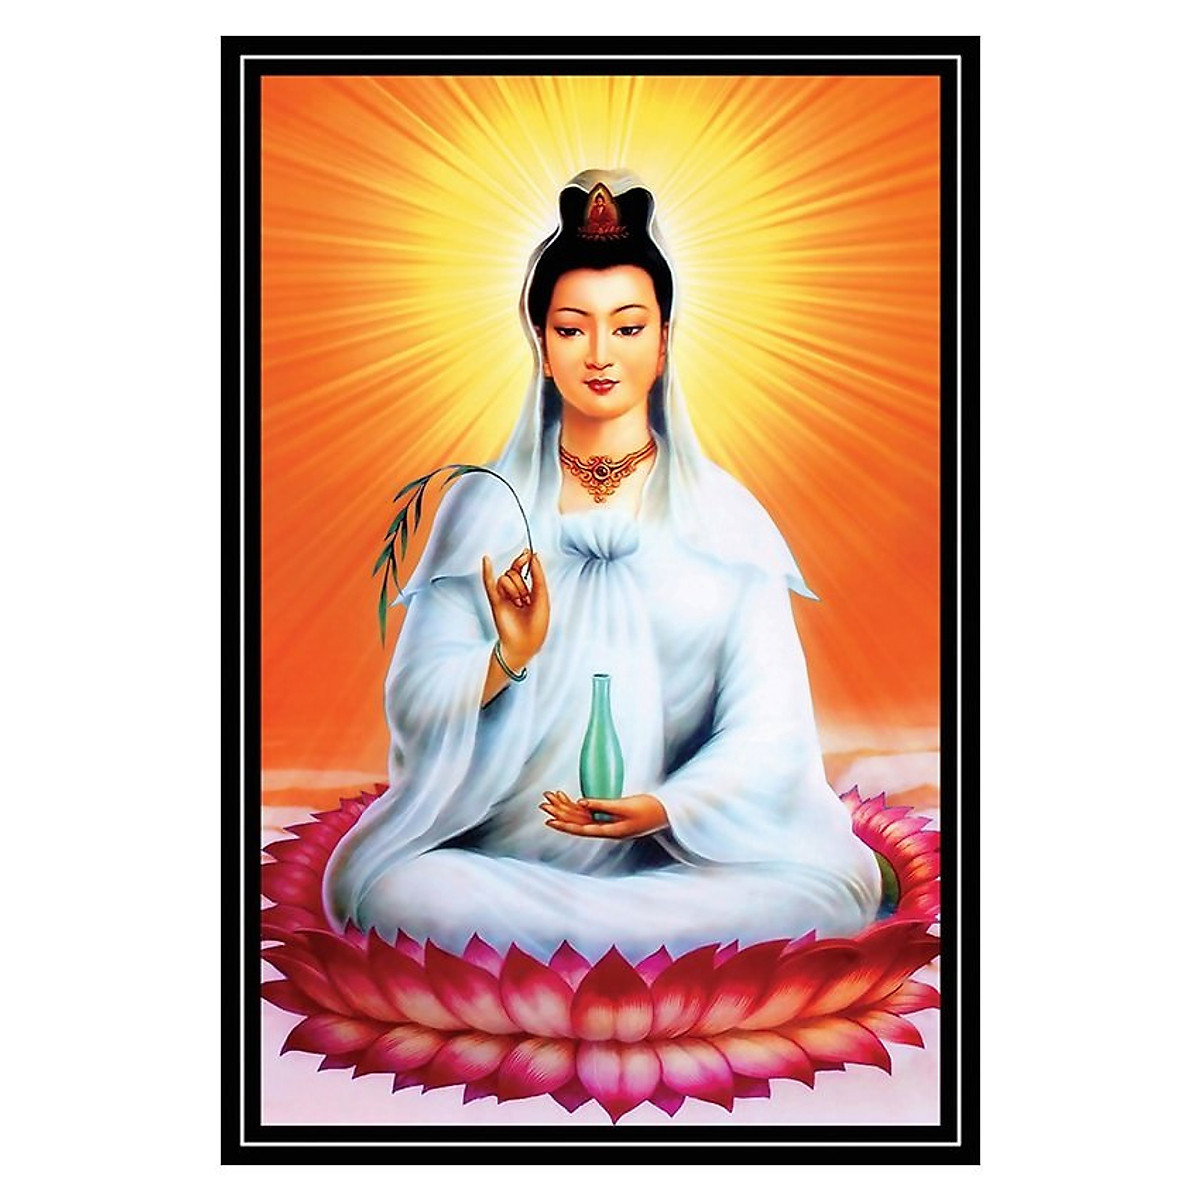 Tranh Phật Giáo Quan Thế Âm Bồ Tát 2316 - Các loại tranh khác